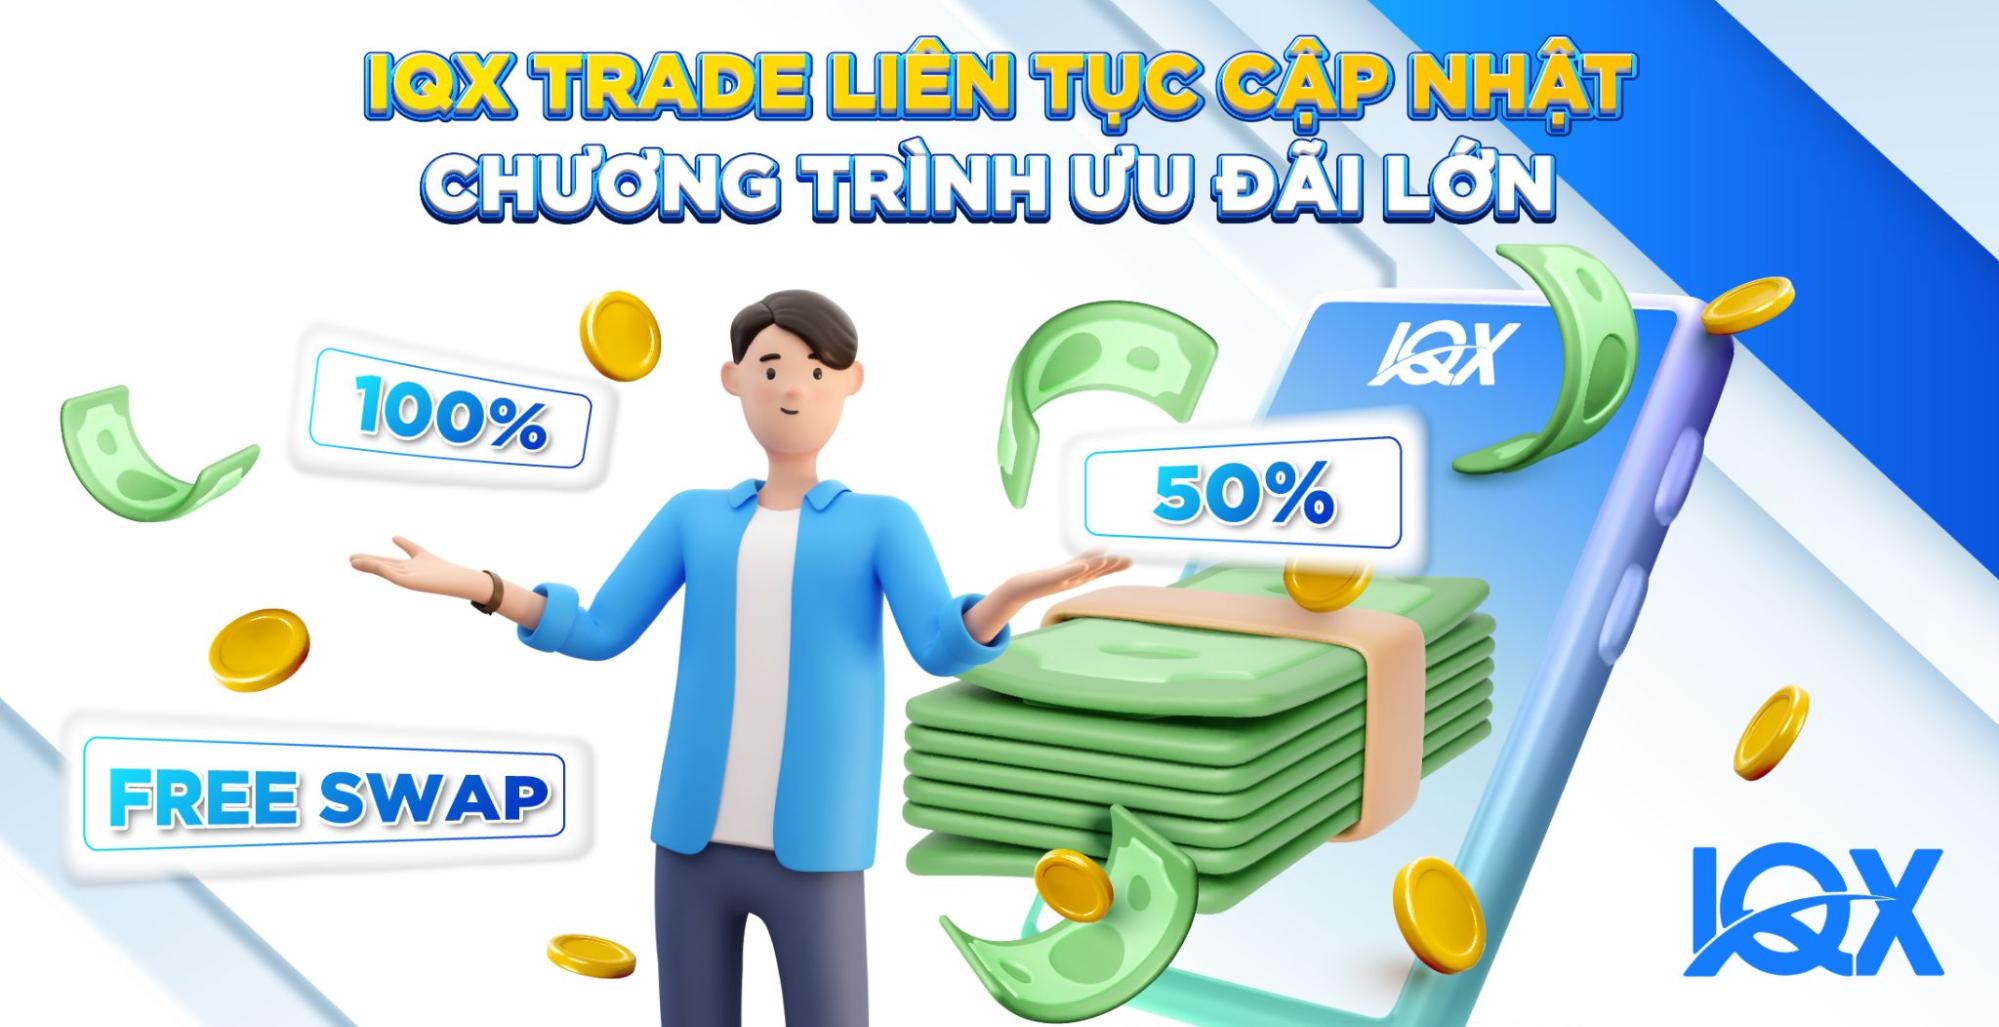 Sàn IQX Trade ban hành chính sách hỗ trợ 100% cho nhà đầu tư Việt